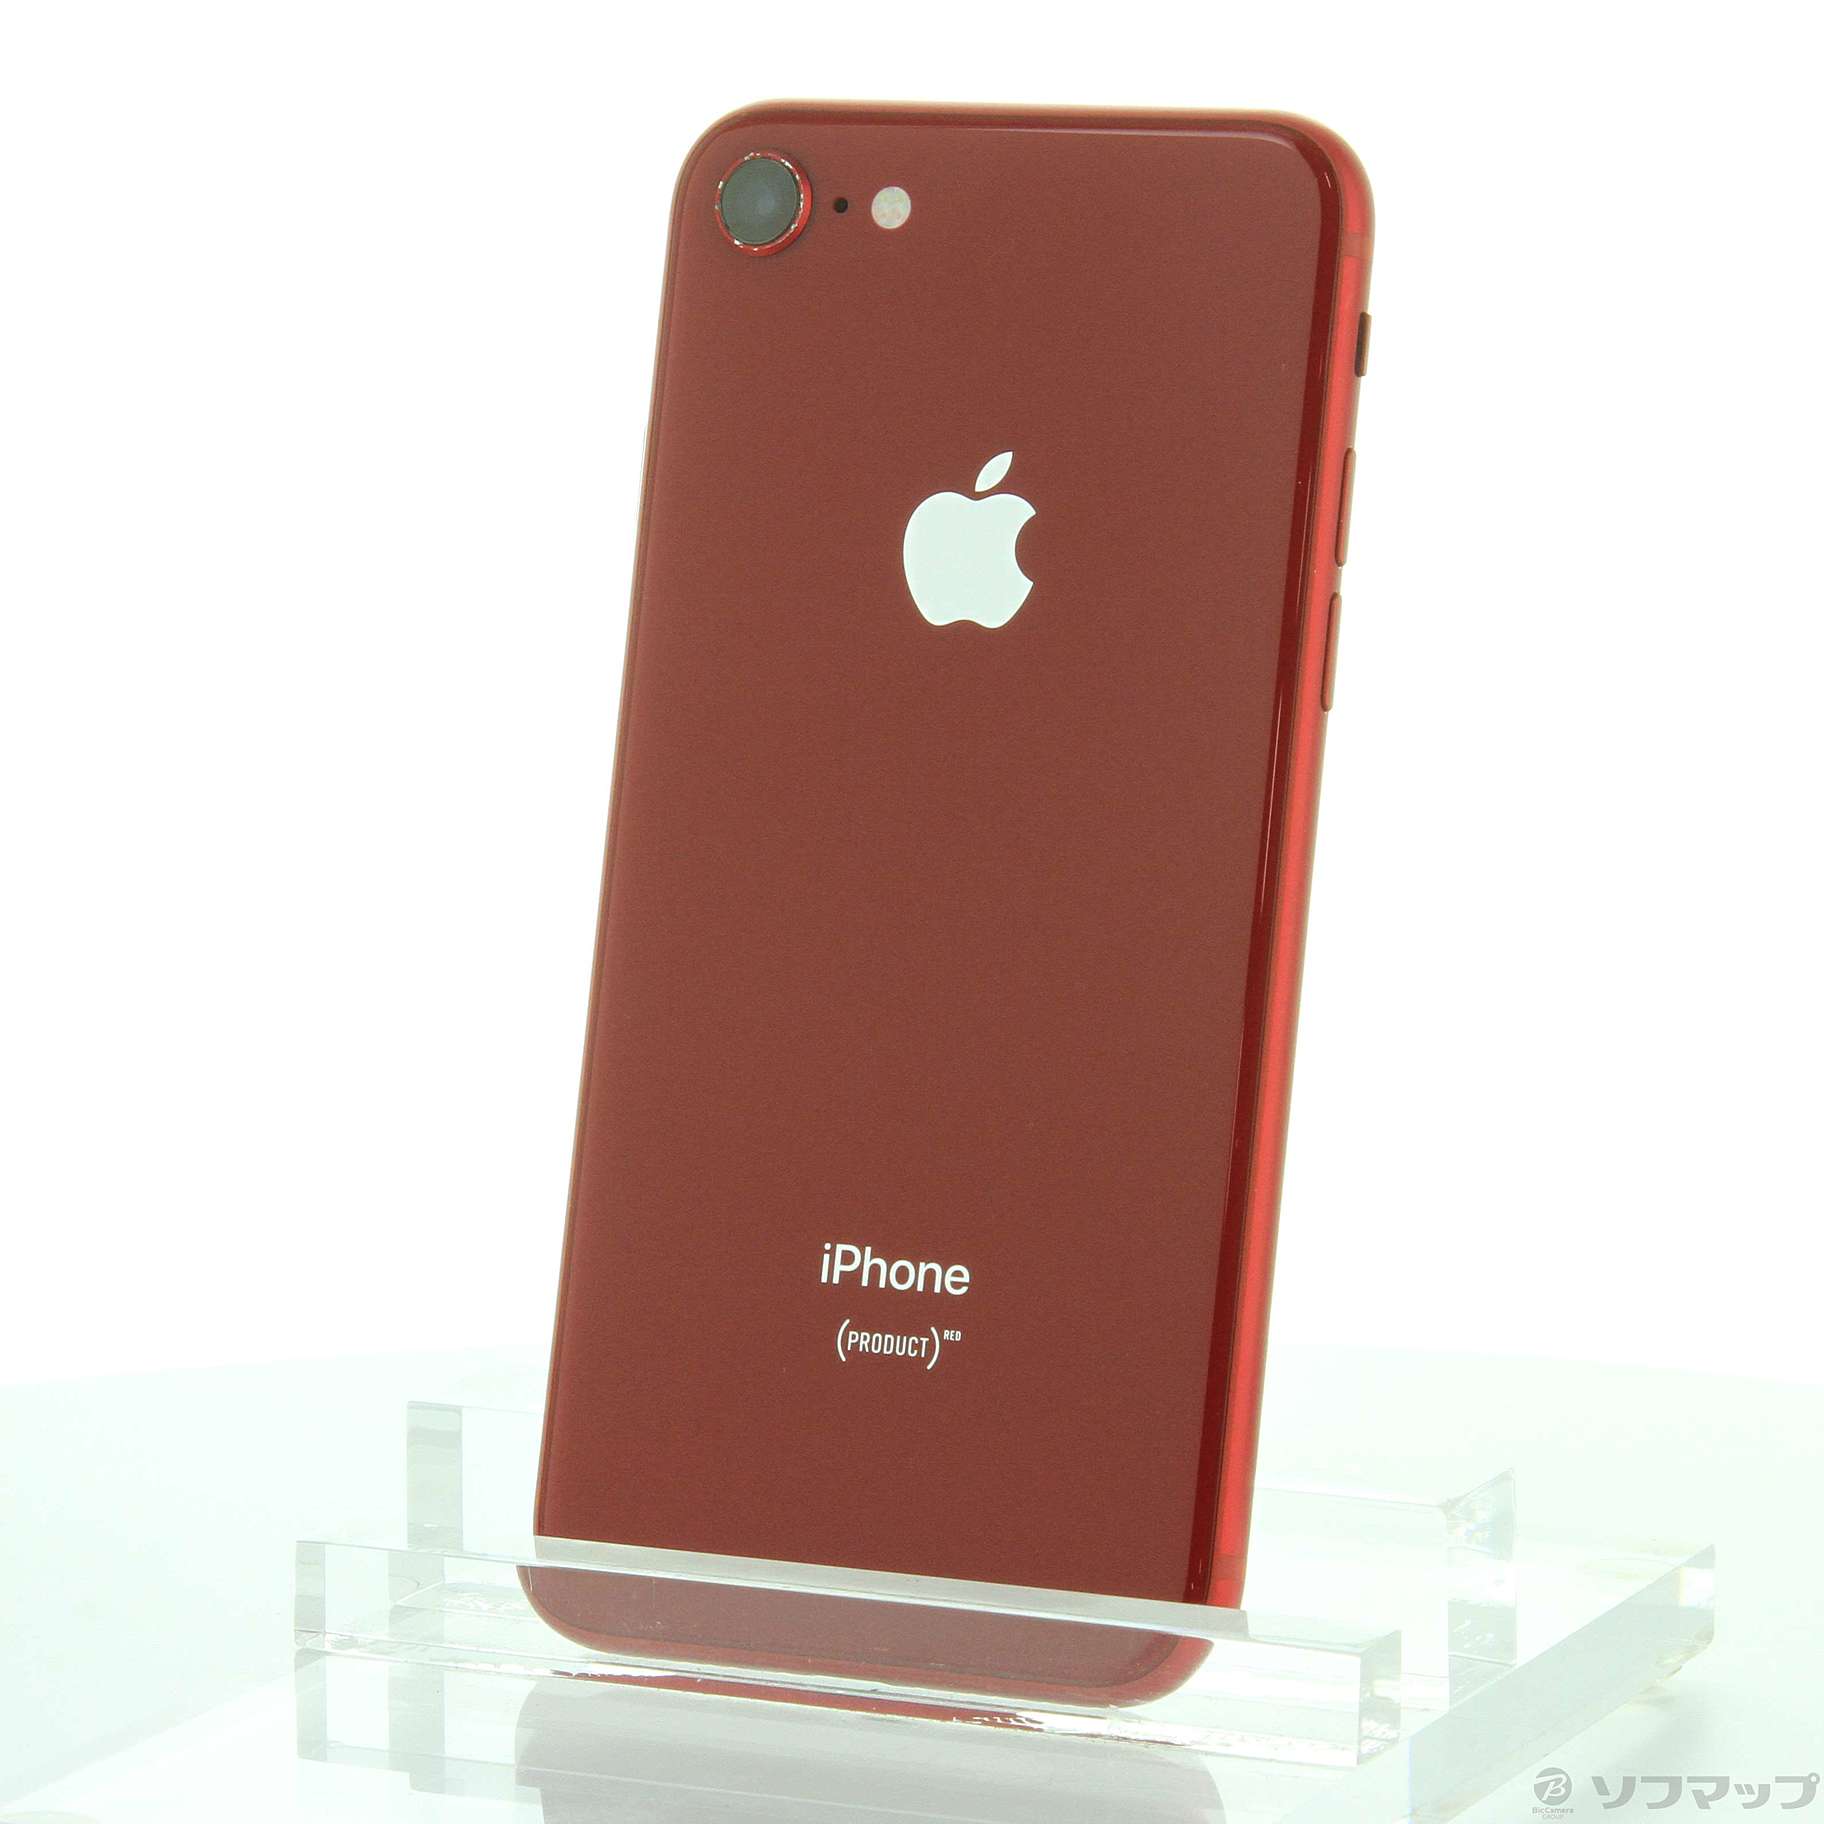 iPhone8 64GB プロダクトレッド○iOSバージョン - スマートフォン本体